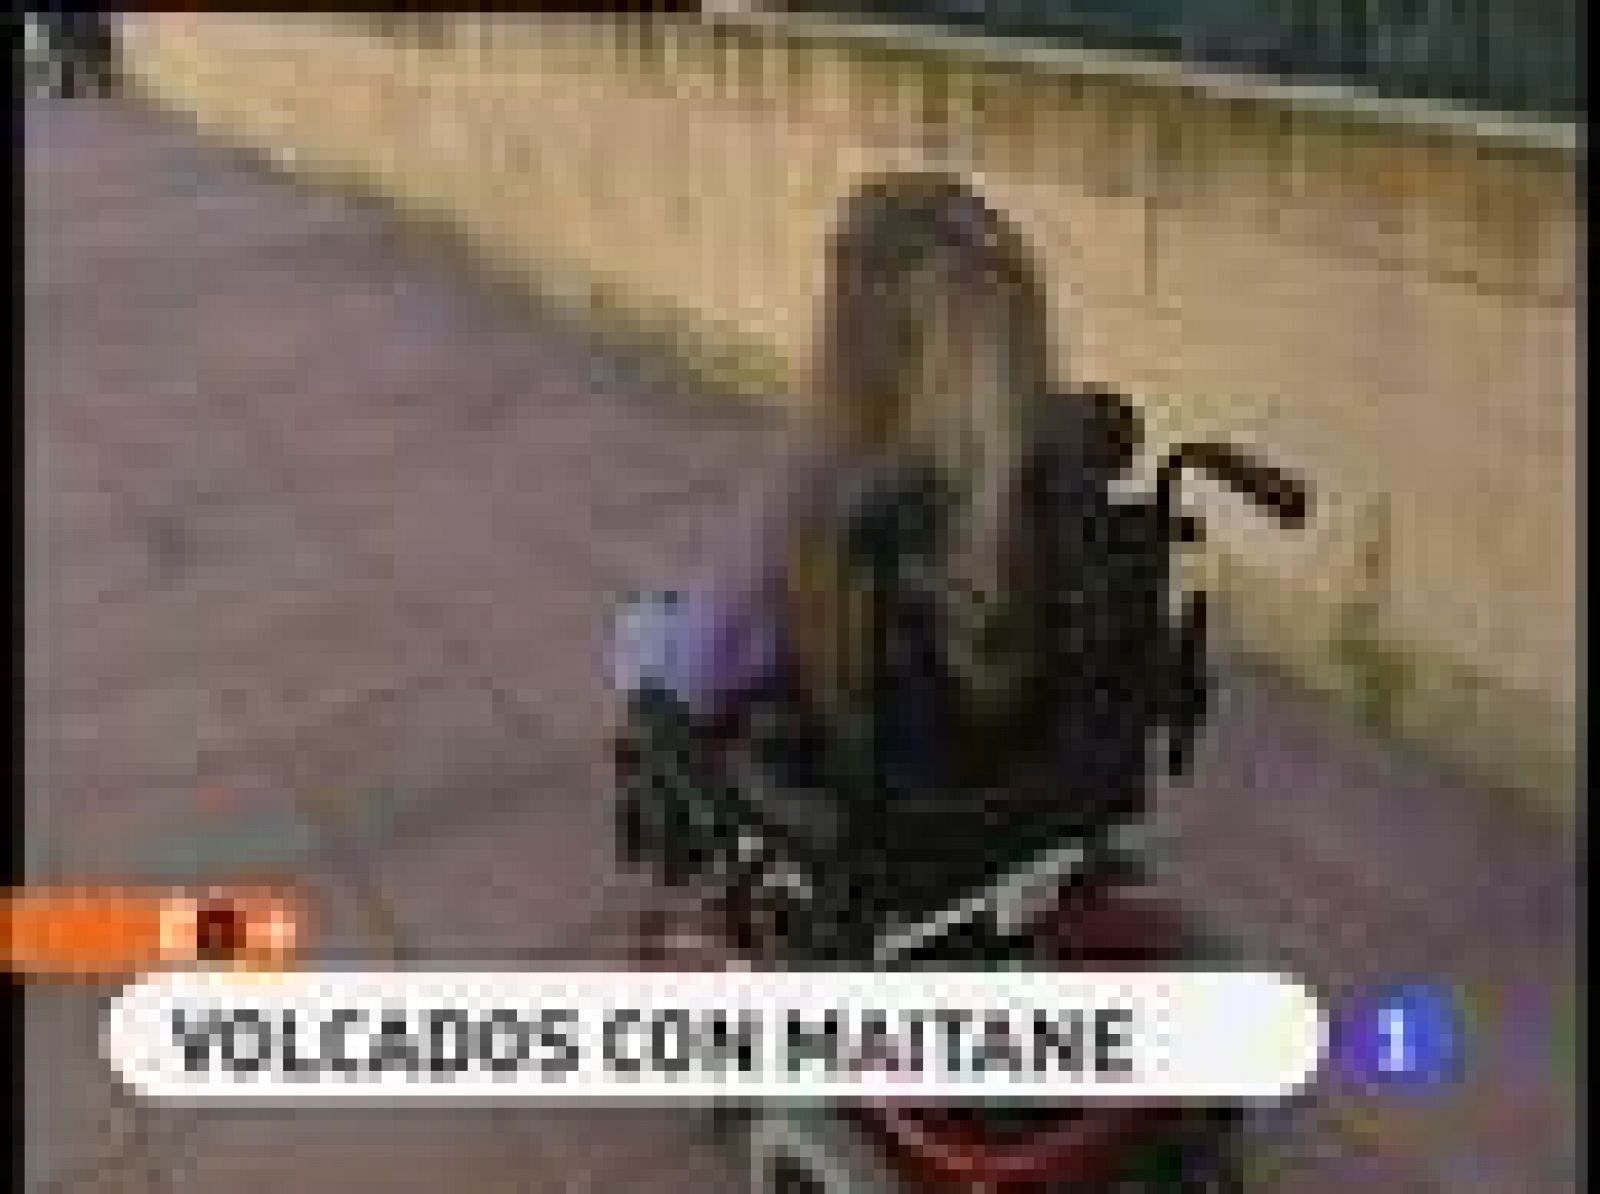 España Directo: Volcados con Maitane | RTVE Play